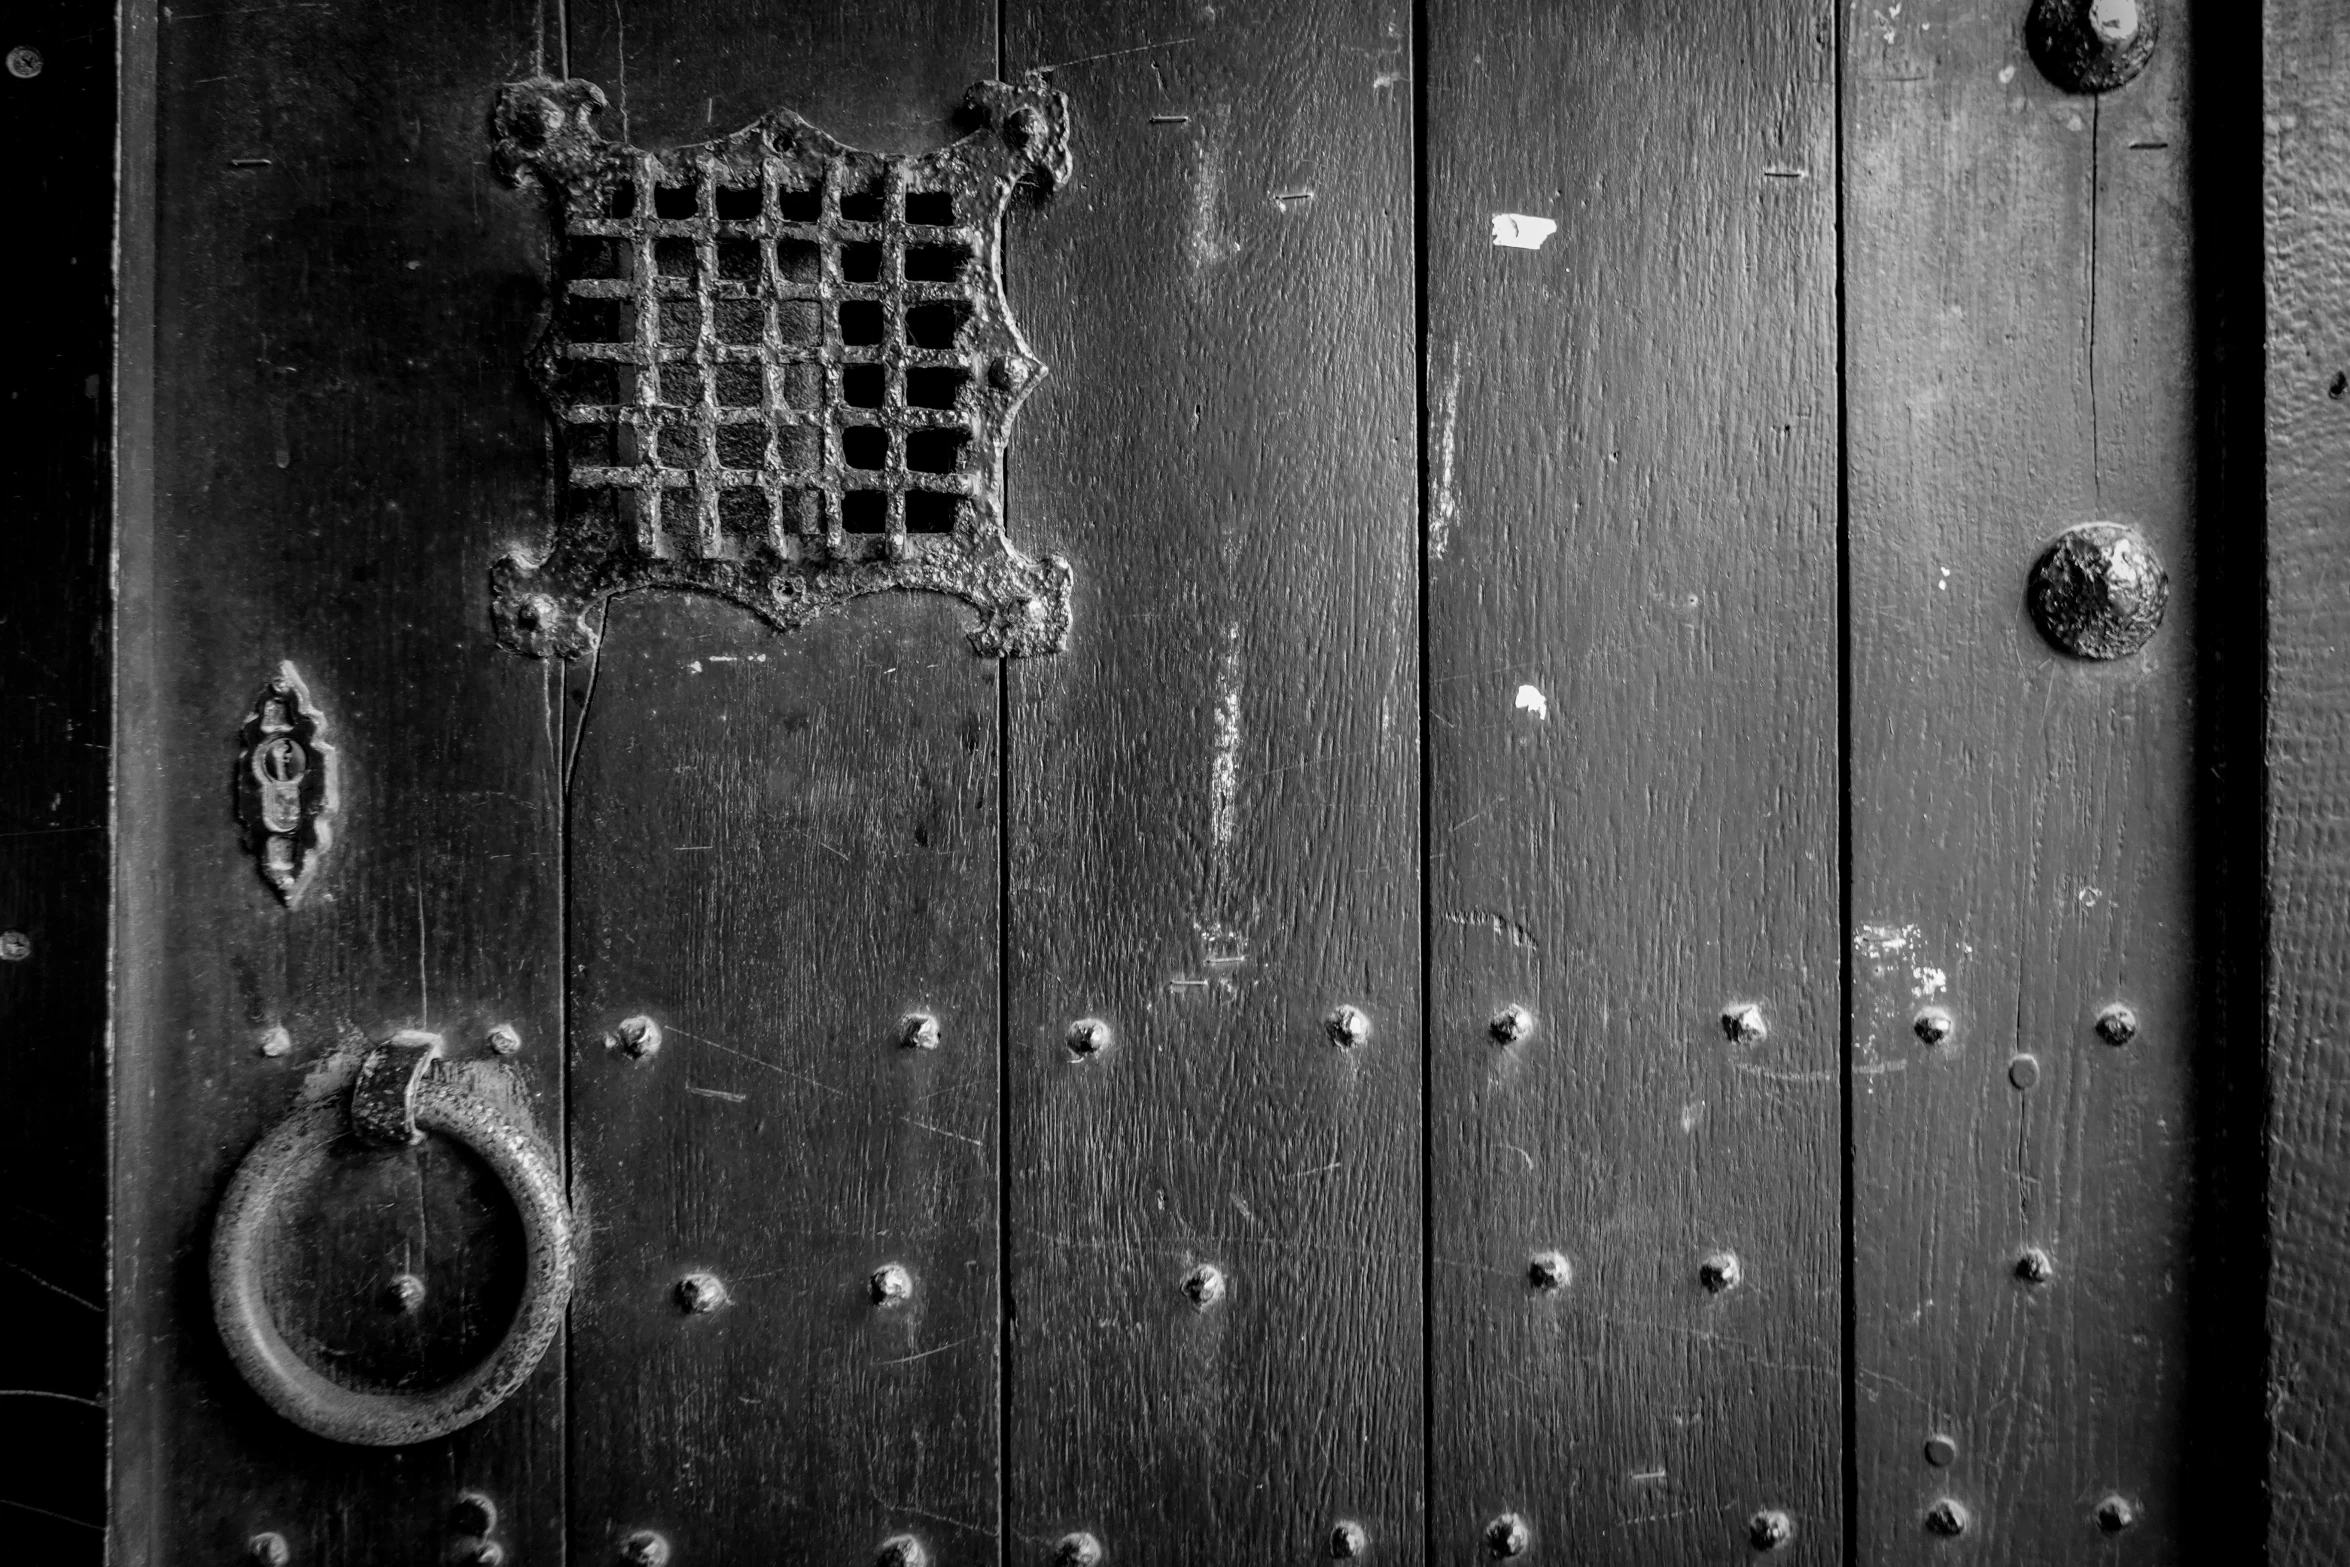 the old wooden door has round metal s